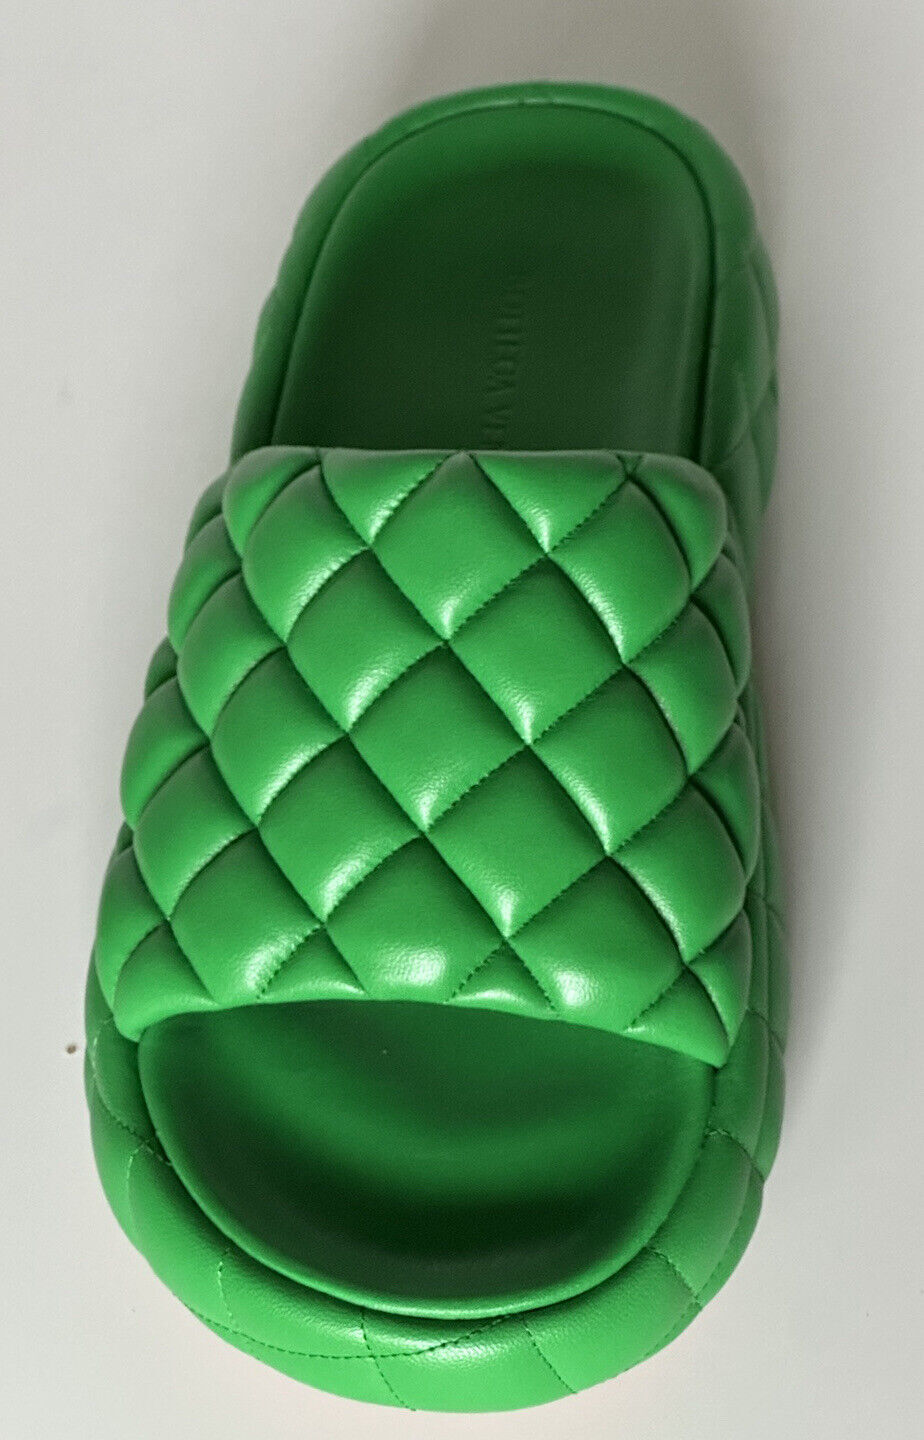 Зеленые кожаные стеганые сандалии Bottega Veneta стоимостью 1450 долларов США 9 США 708885 3708